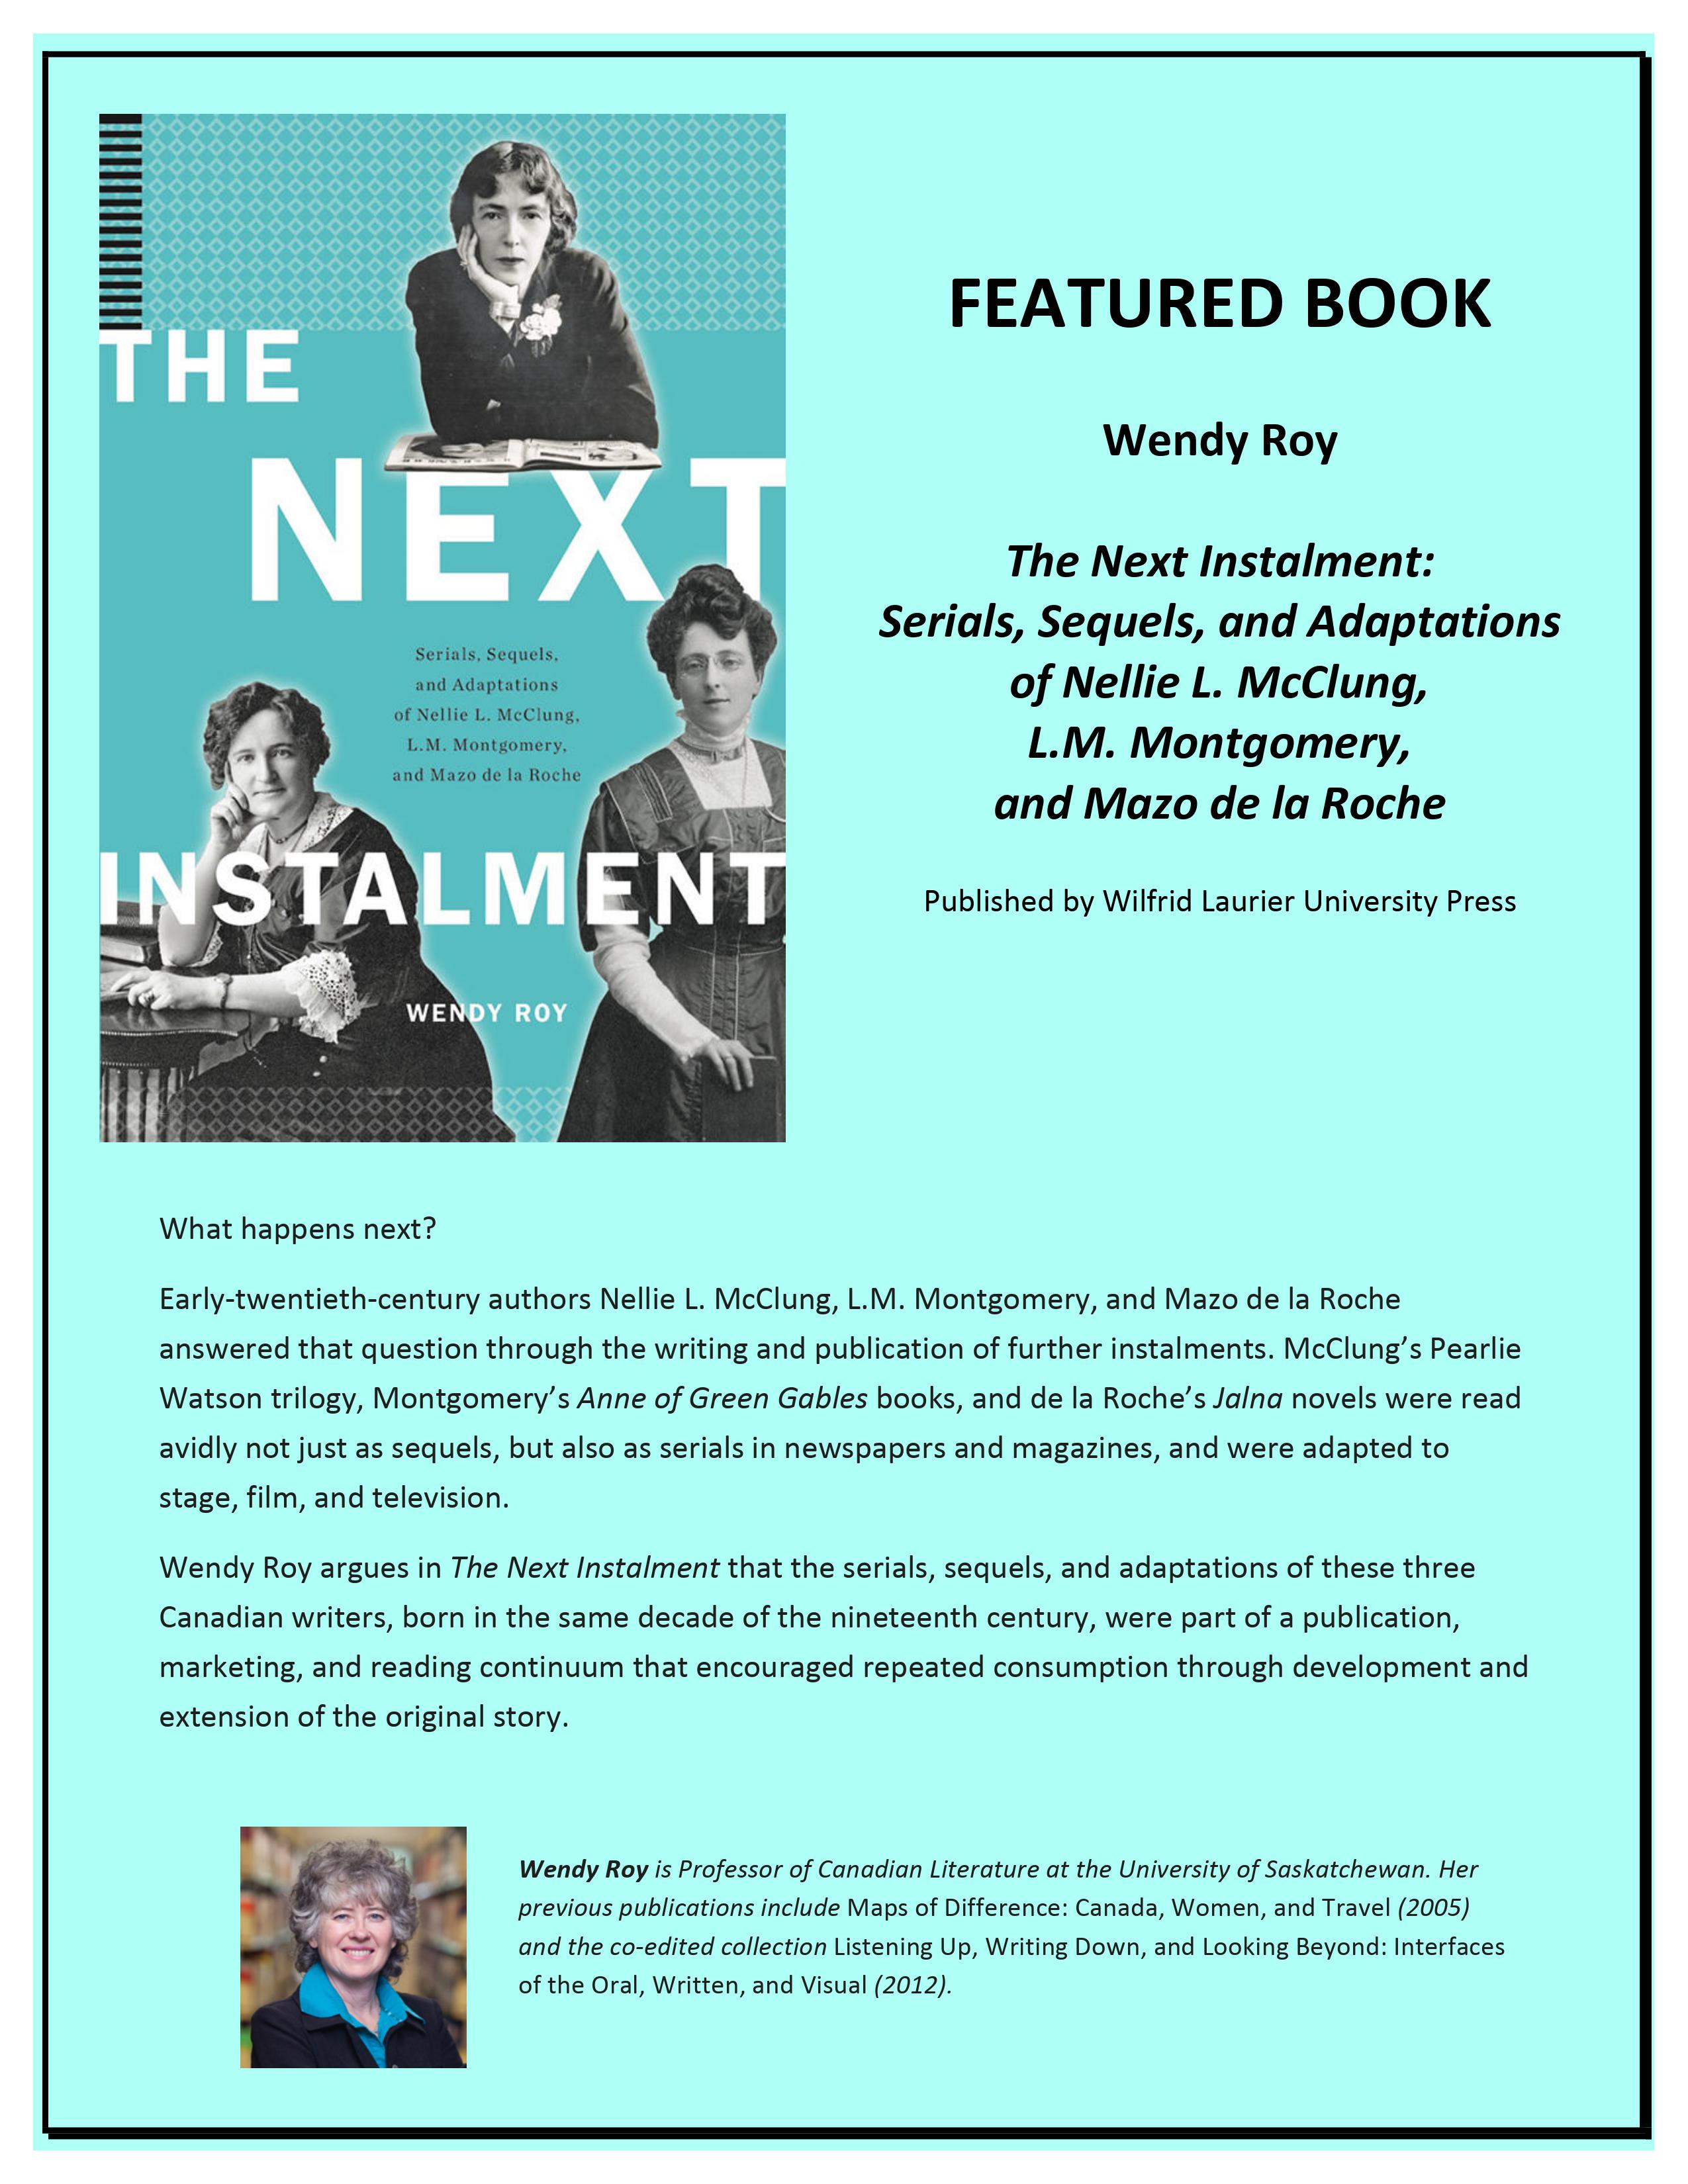 The Next Instalment: Serials, Sequels, and Adaptations of Nellie L. McClung, L.M. Montgomery, and Mazo de la Roche